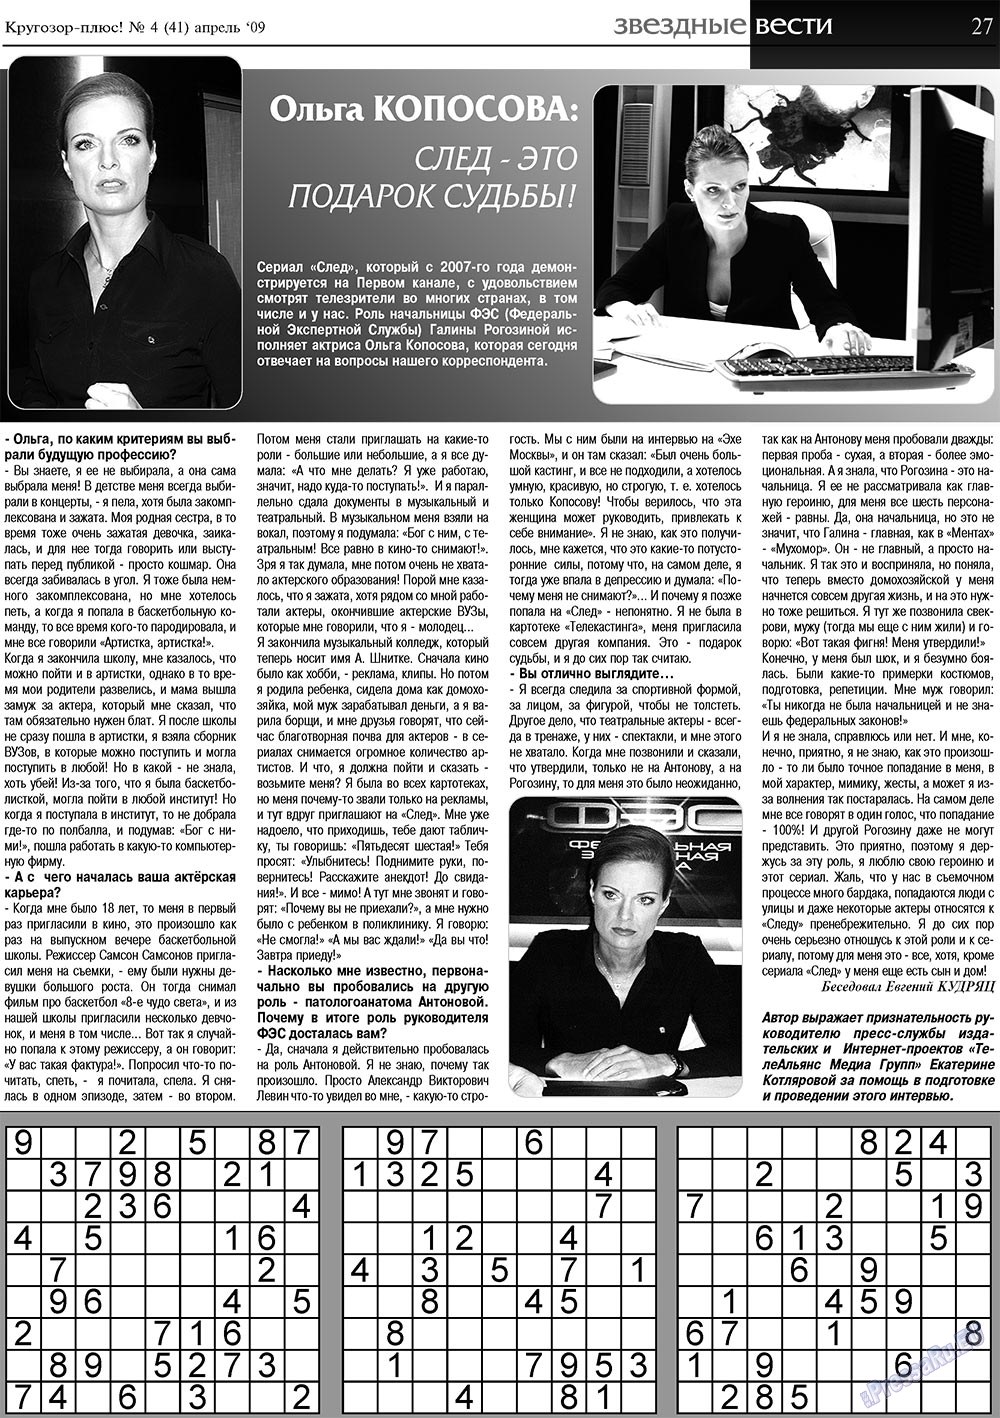 Кругозор плюс!, газета. 2009 №4 стр.27